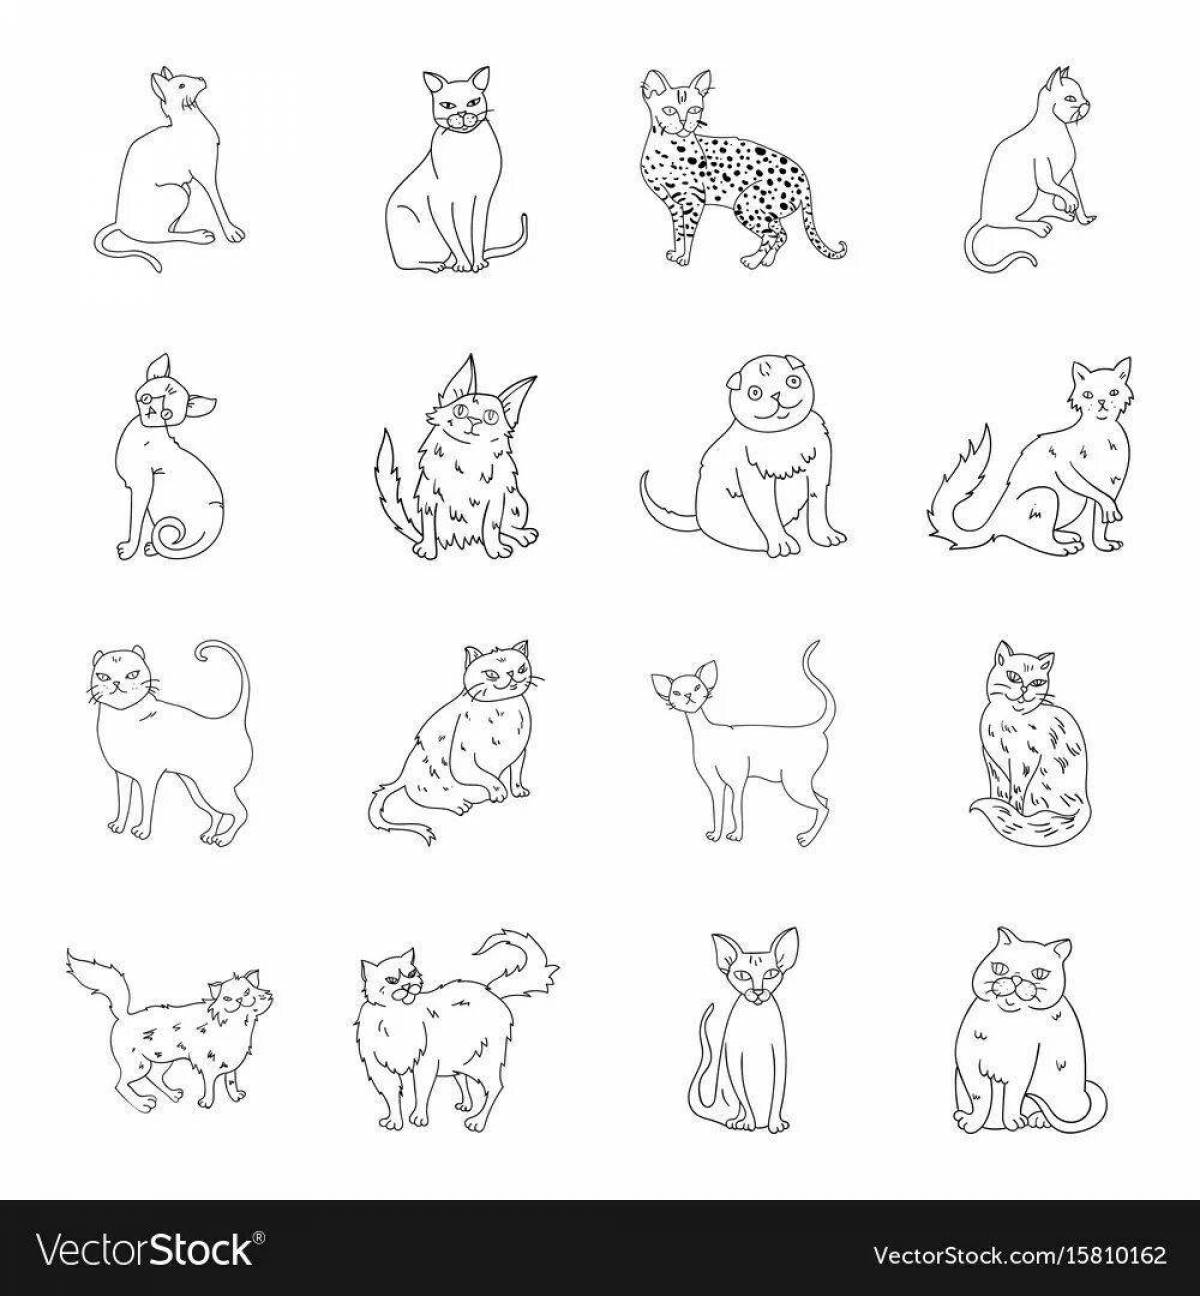 Страница раскраски стикеров fun cat